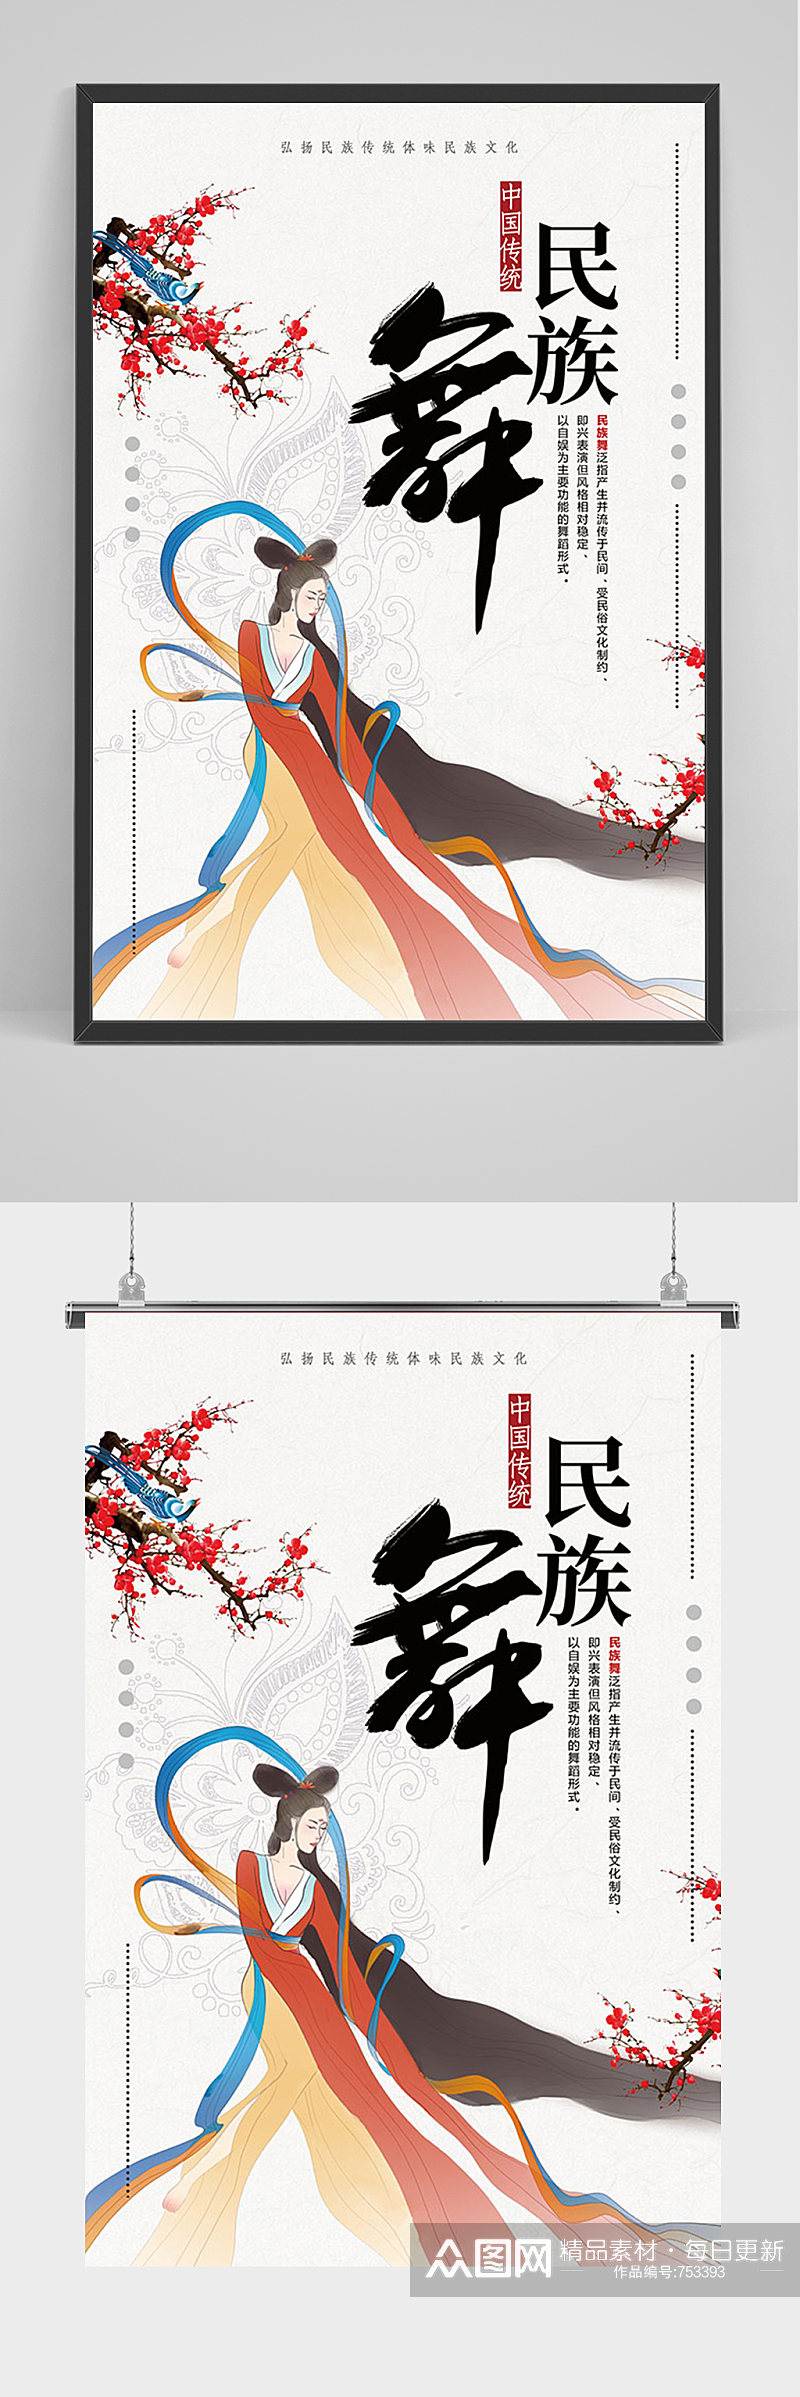 简约中国风民族舞海报素材